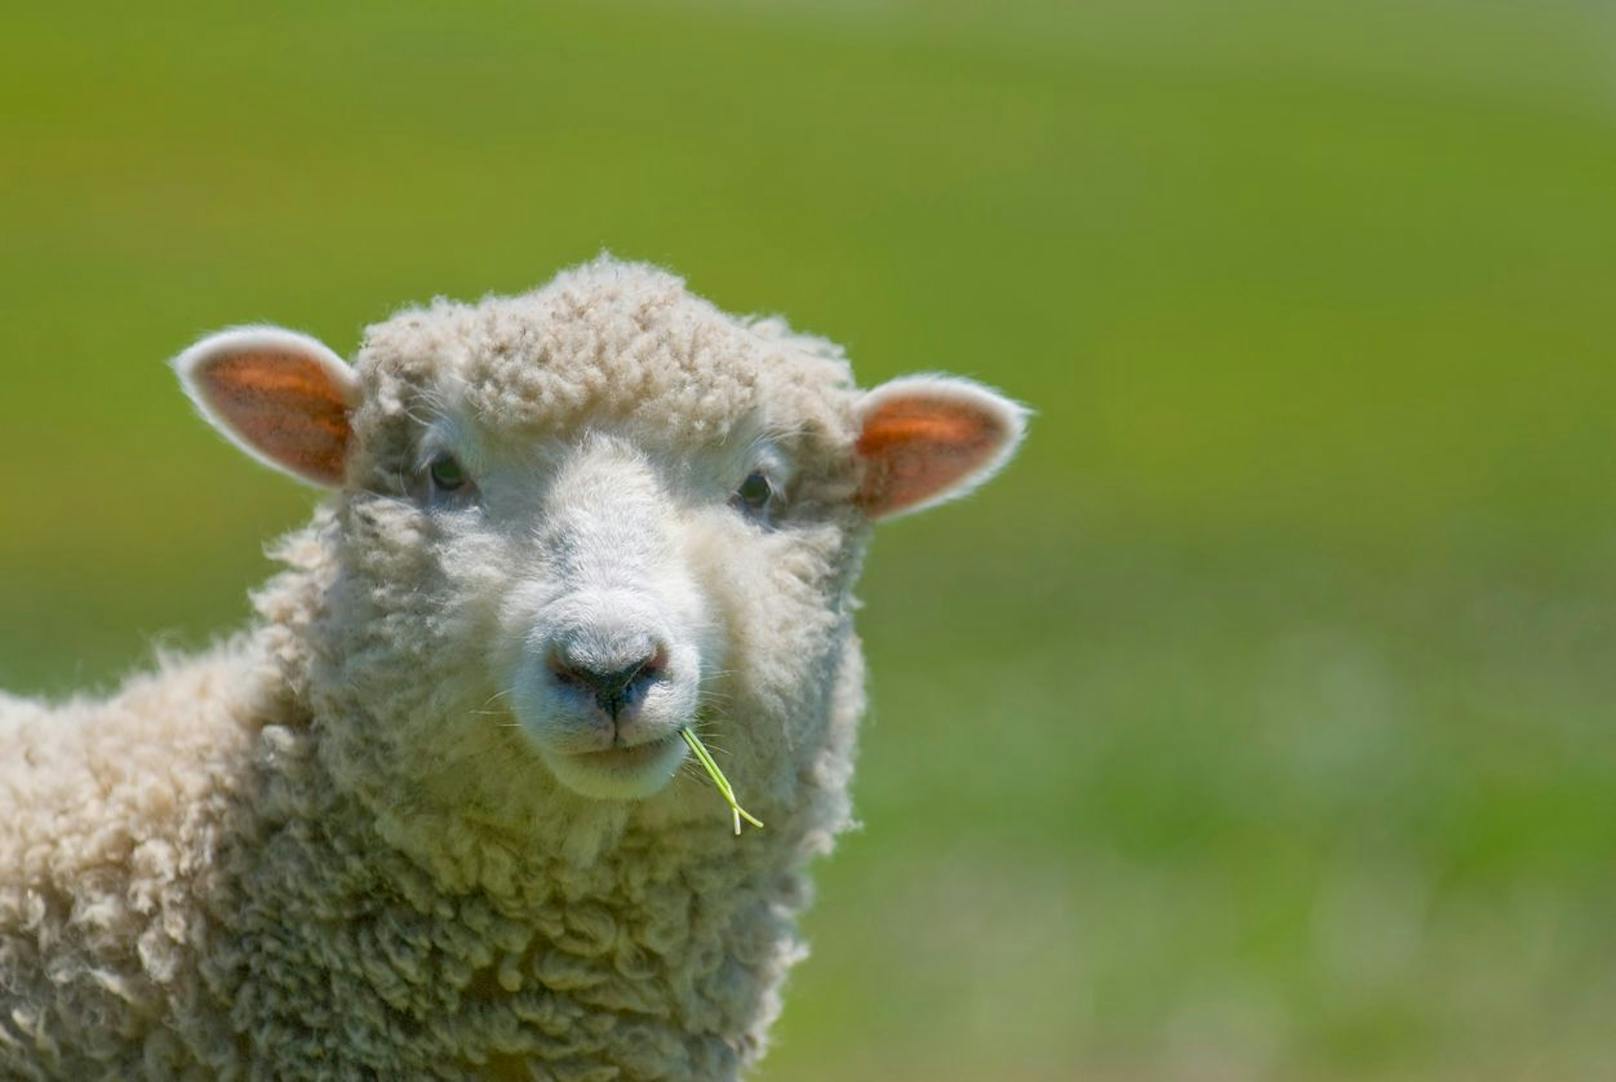 Das Schaf wurde bereits vor etwa 10.000 Jahren domestiziert und ist deshalb das älteste Haustier der Welt.